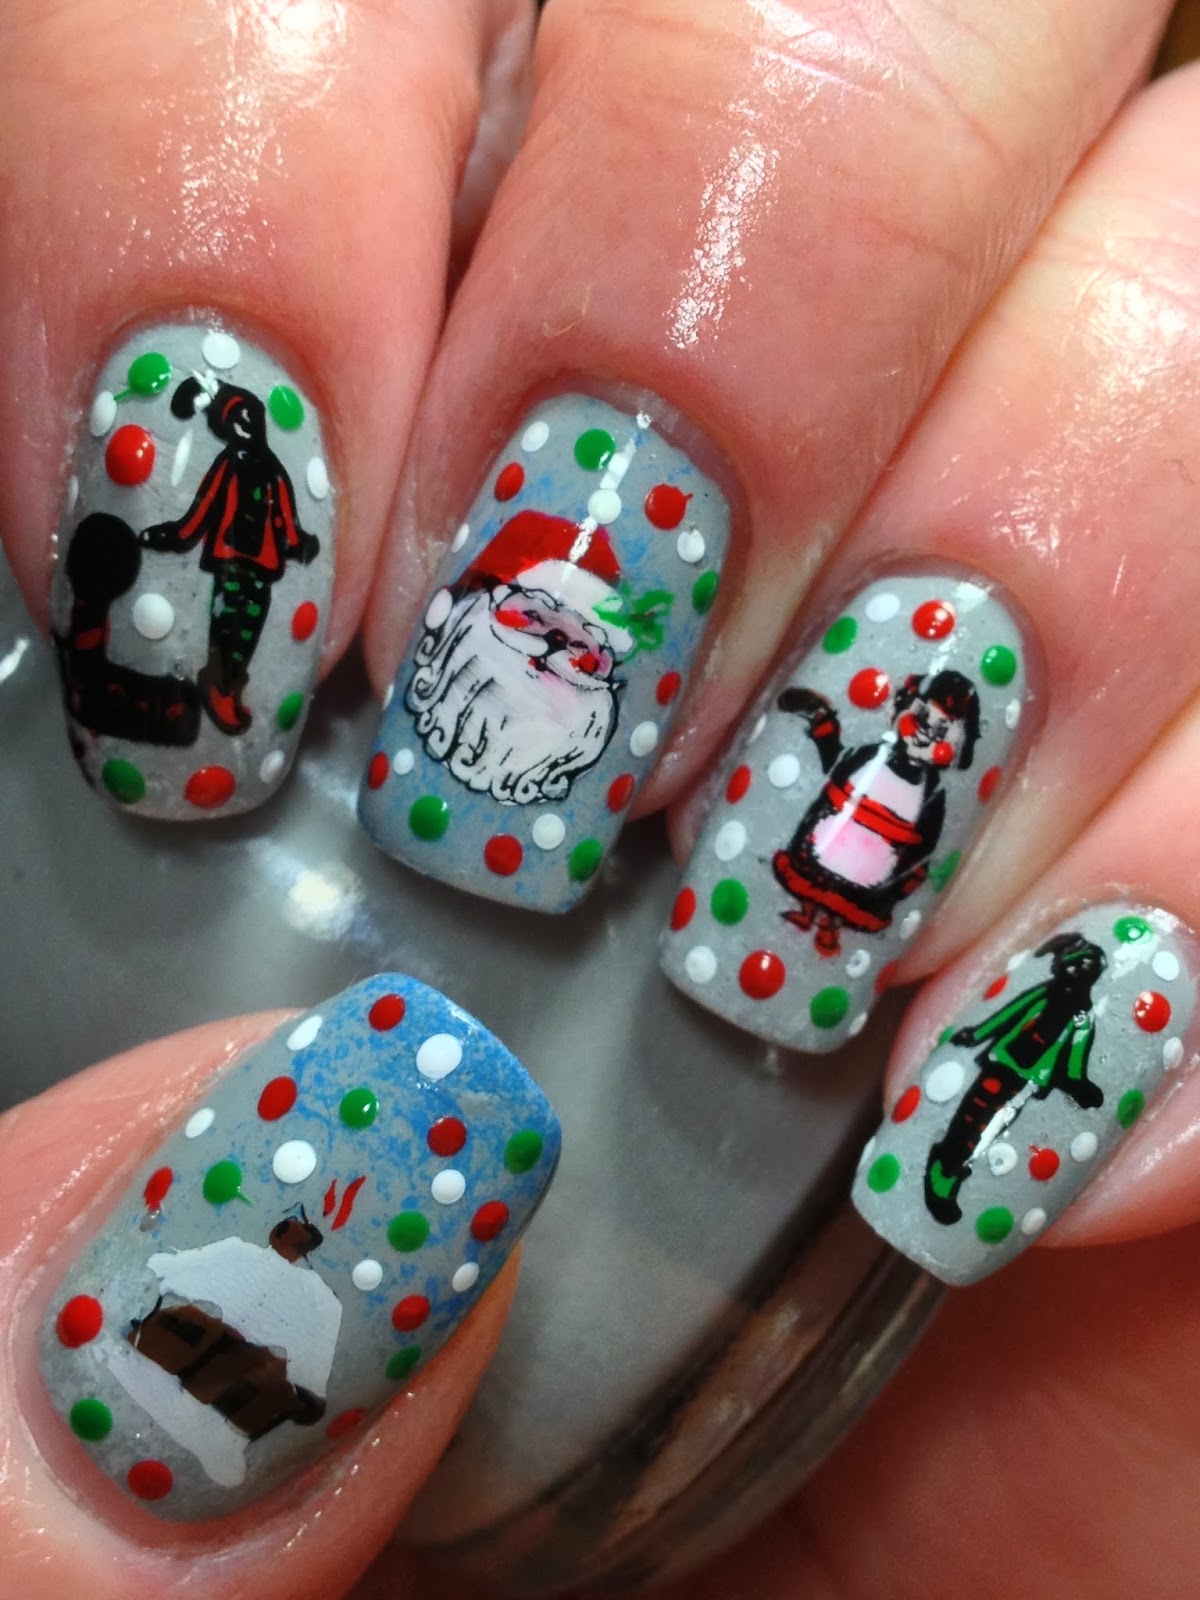 Canadian Nail Fanatic: Santa's Getting Ready at the North Pole!